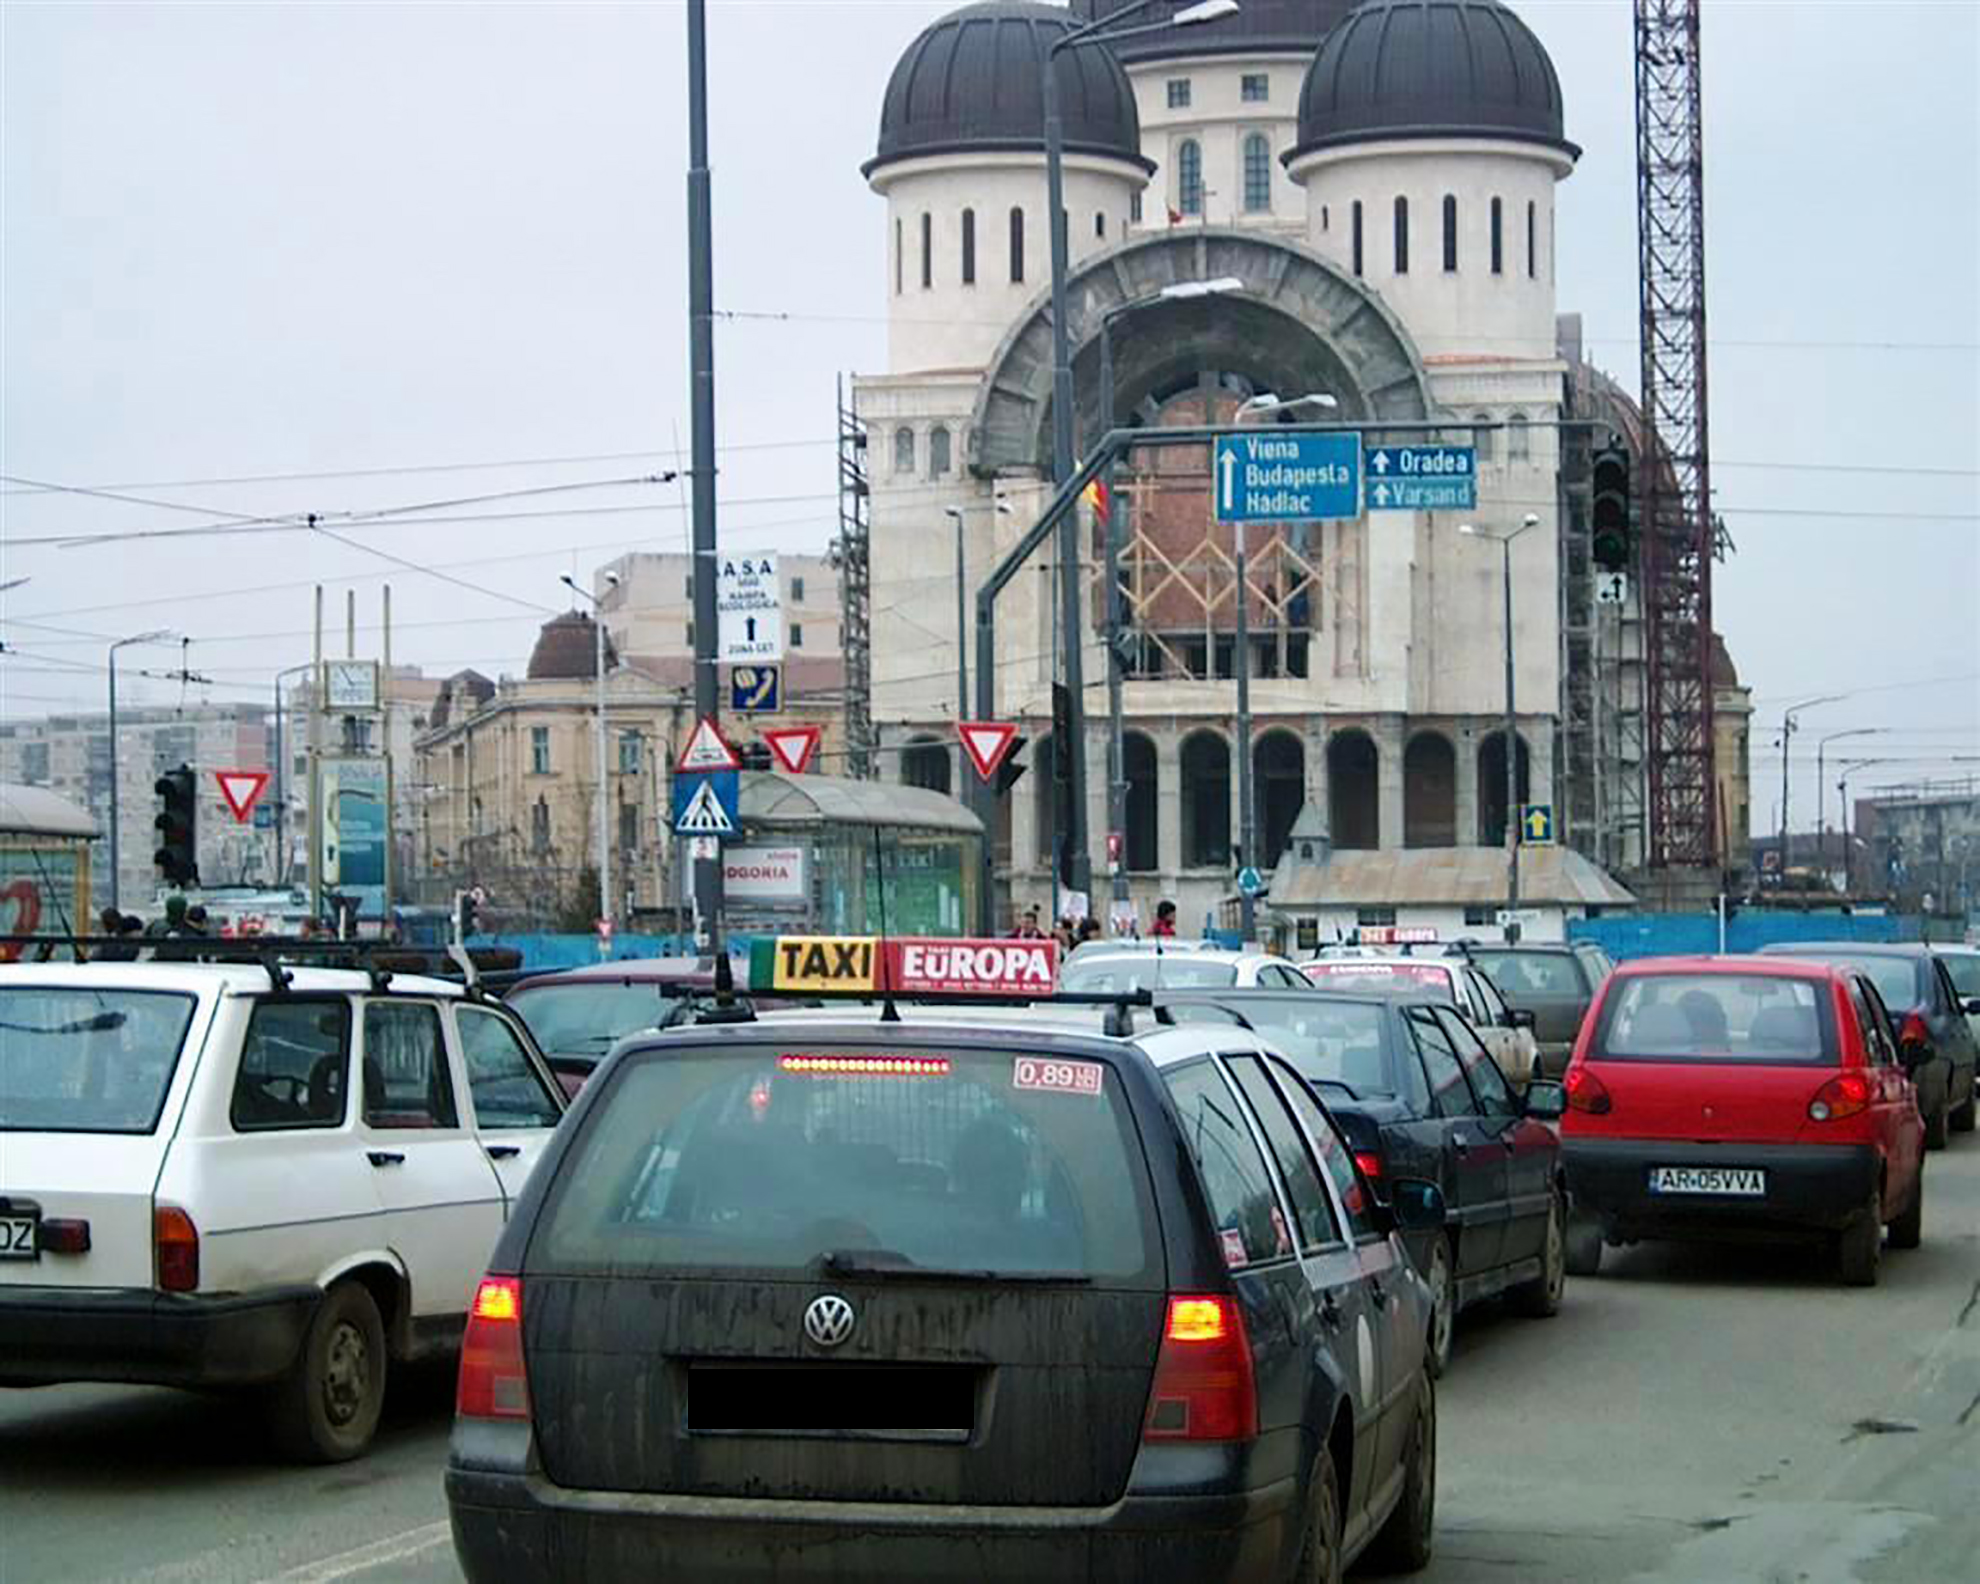 EXCLUSIV: Cea mai mare firmă de taximetrie din Arad, Taxi Europa, acuzată ca are dispeceri suspecți de COVID. Compania se apară și spune că nu sunt cazuri